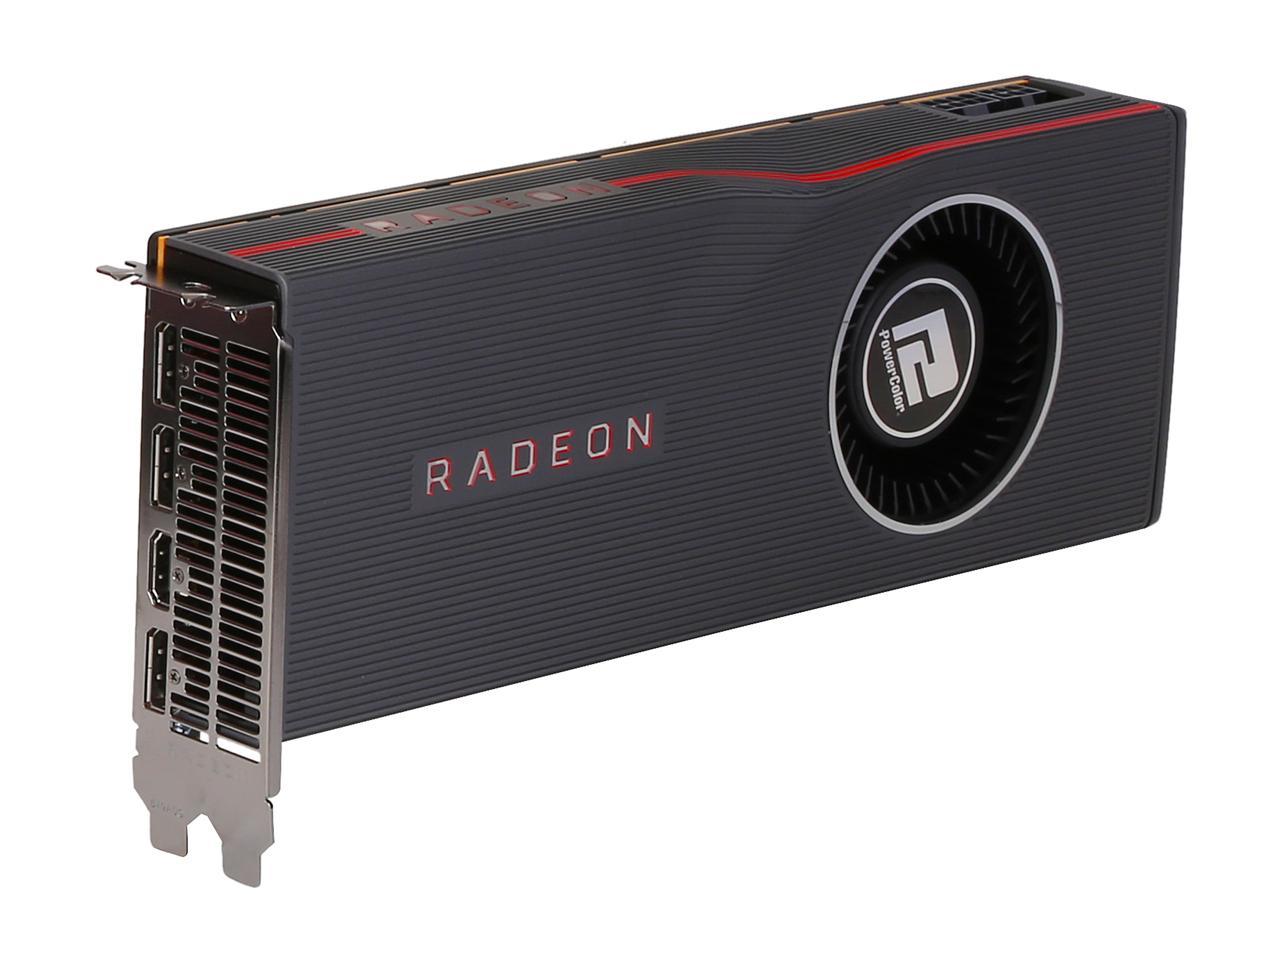 PowerColor AMD Radeon RX 5700 XT 8GB GDDR6 AXRX 5700XT 8GBD6-M3DH | eBay